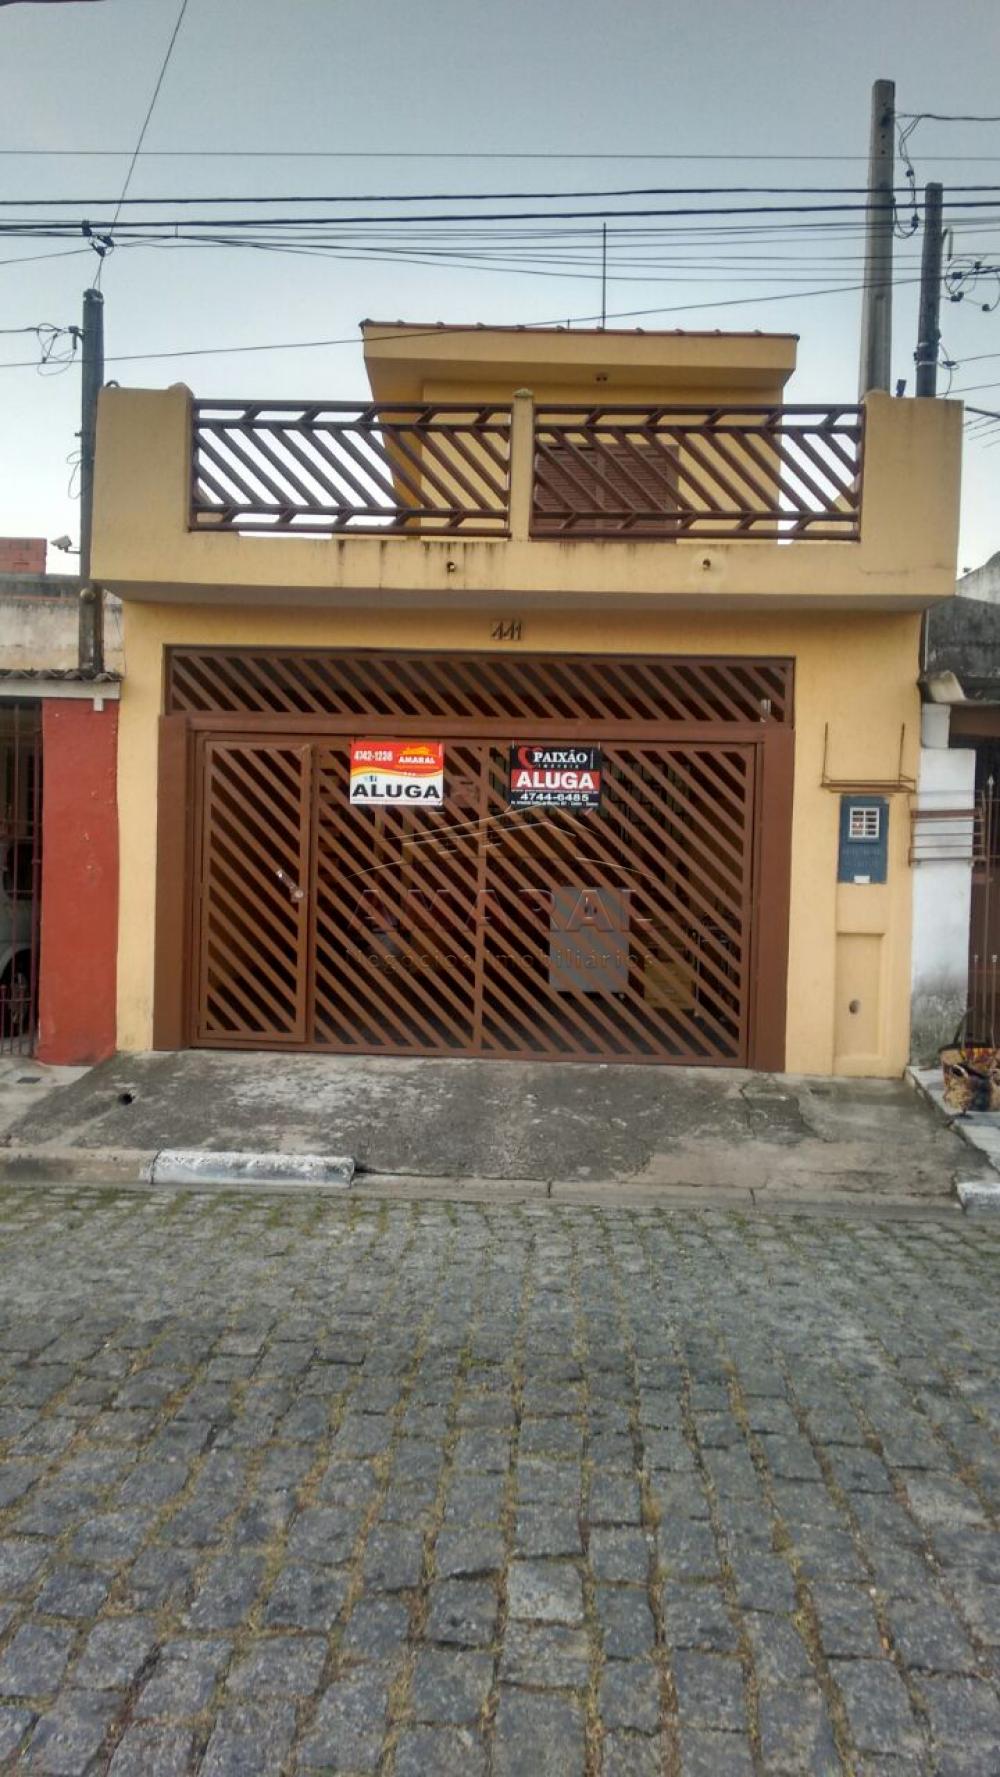 Alugar Casas / Sobrado em Suzano R$ 1.500,00 - Foto 1